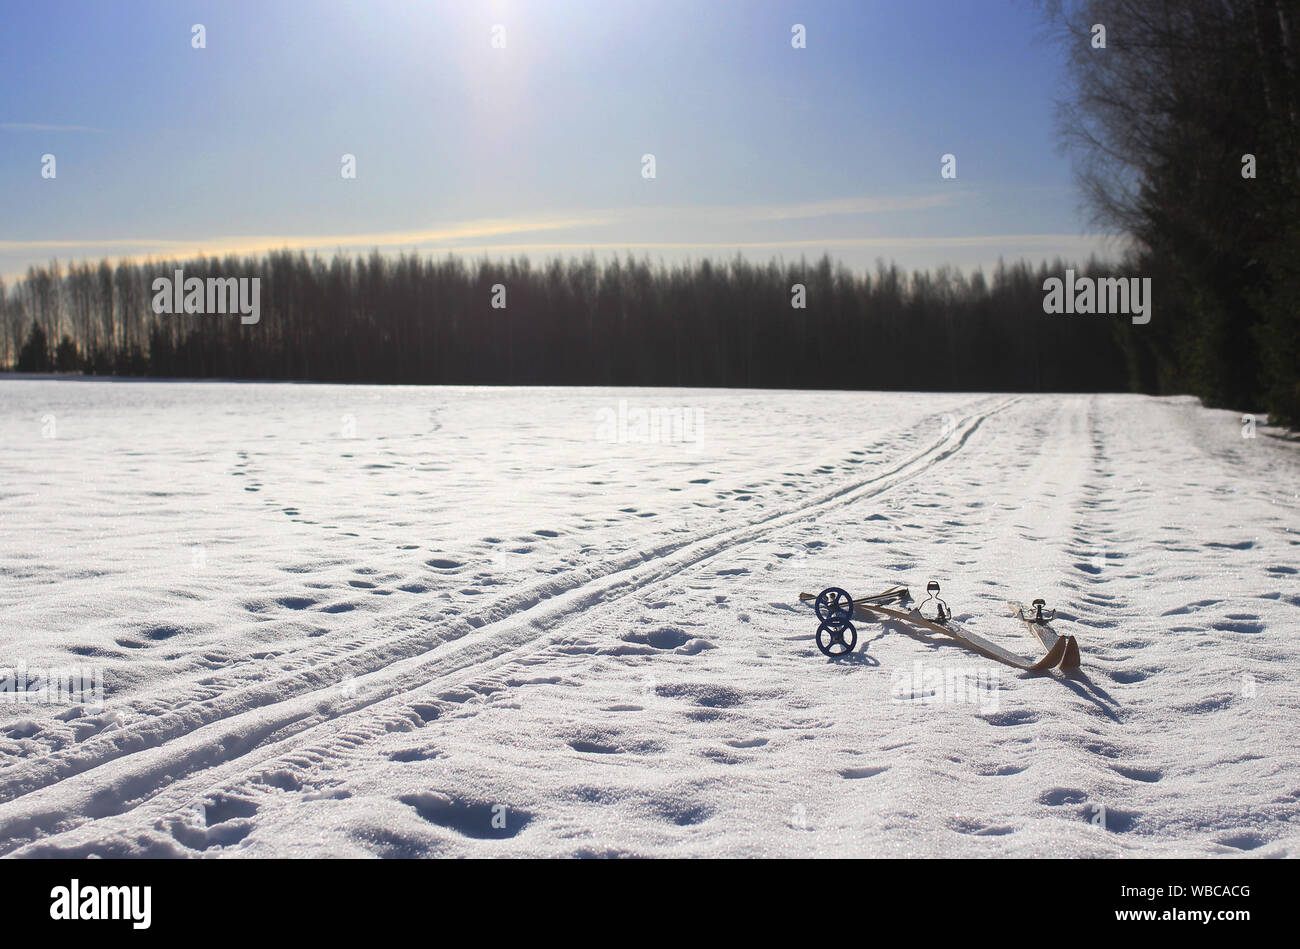 Croix de bois vieux skis de fond et une piste de ski enneigées vide avec ciel bleu clair Banque D'Images